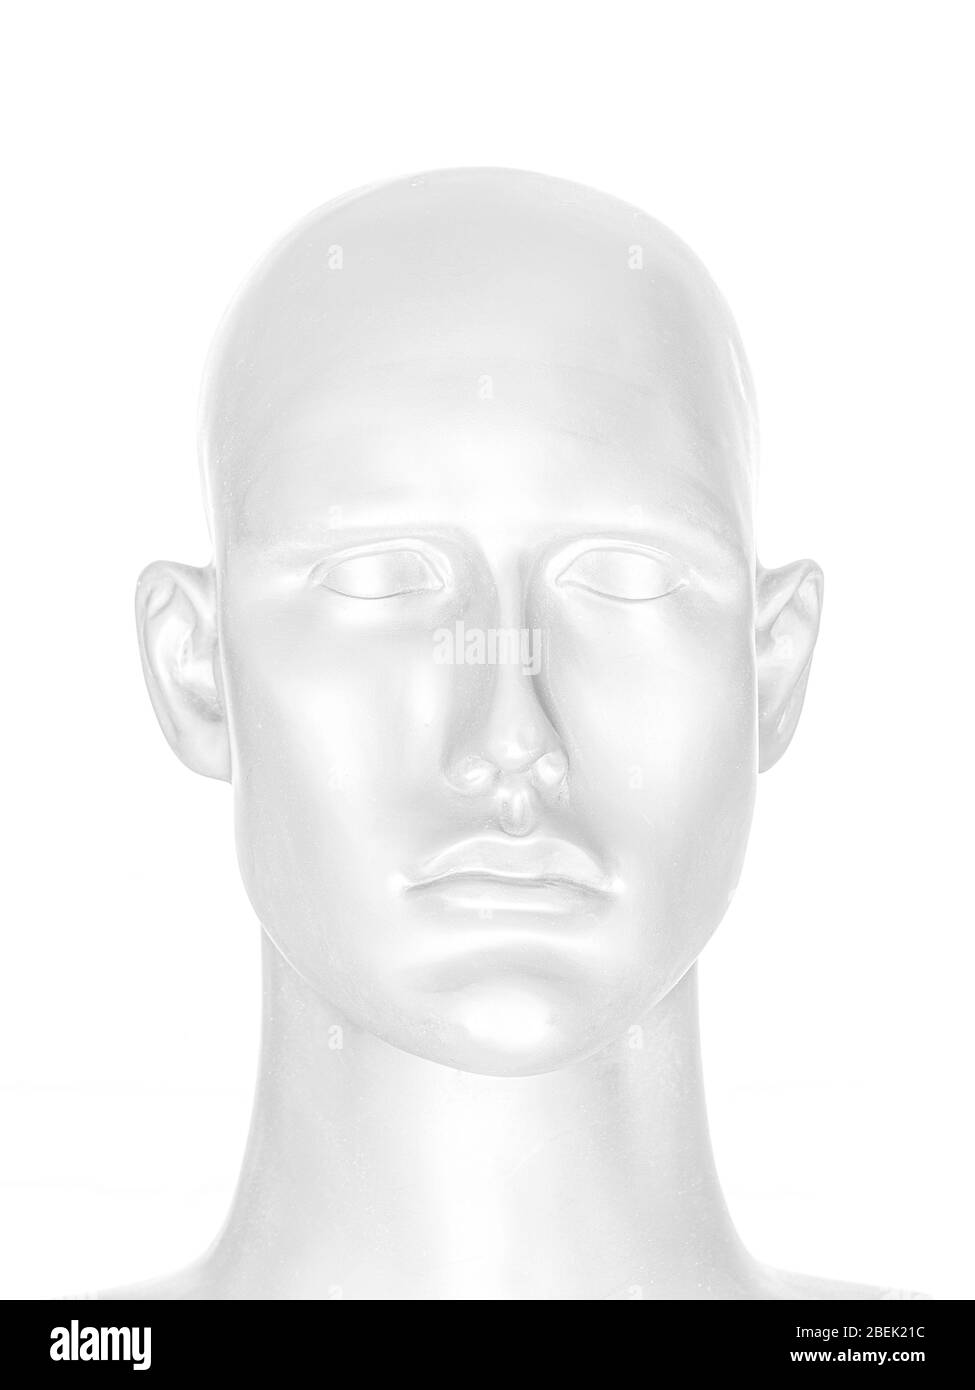 Immagine astratta del volto umano, ritratto della testa di manichino in stile chiave Foto Stock